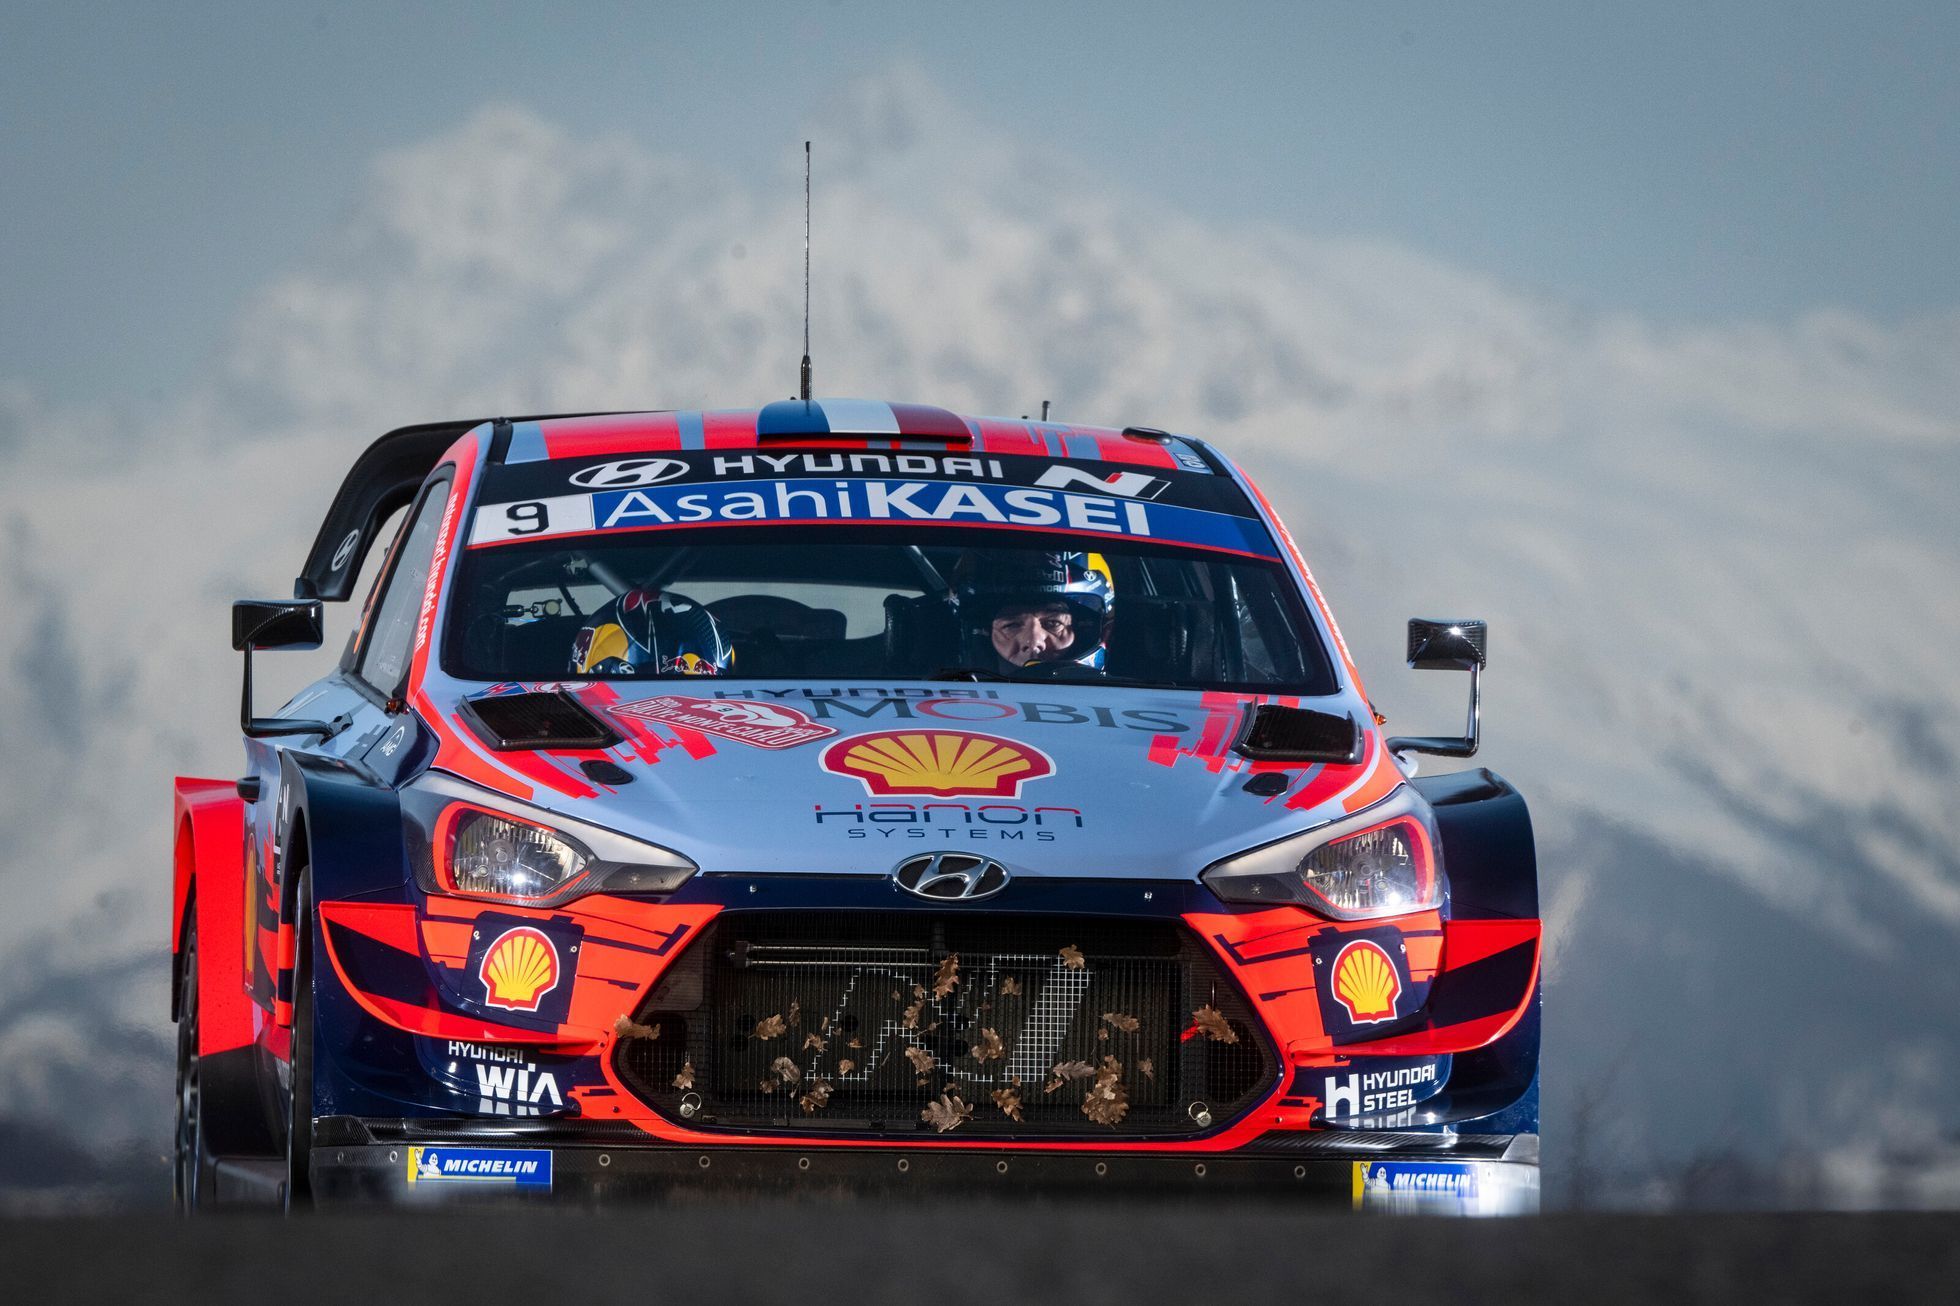 Rallye Monte Carlo 2020: Sébastien Loeb, Hyundai